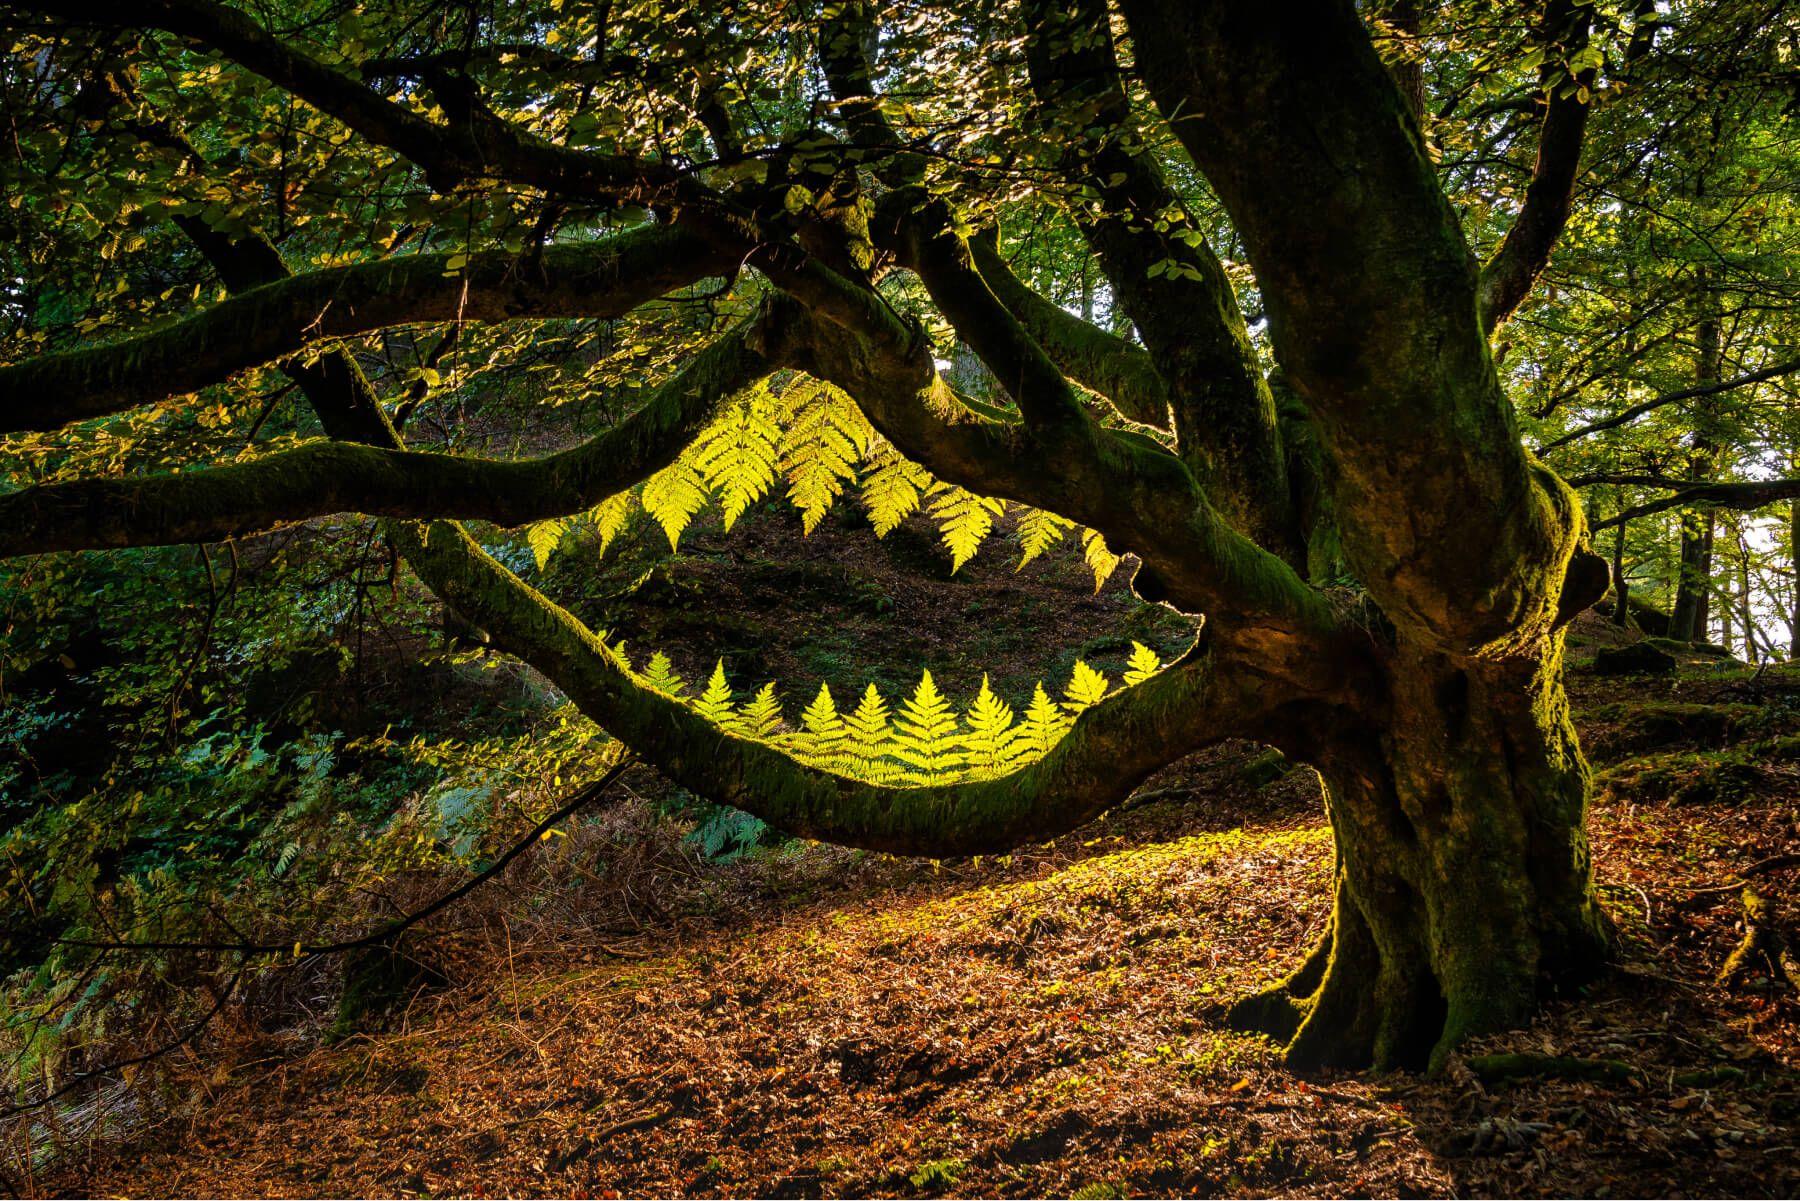 هل تستطيع أن تراه؟ الباريدوليا، أو العمل الفني غير الدائم الذي صُنع في الغابة المحيطة بموقع هيرميتاج دونكيلد في إسكتلندا.

المصور: لورانس وينرام
الموقع: هيرميتاج دونكيلد، إسكتلندا